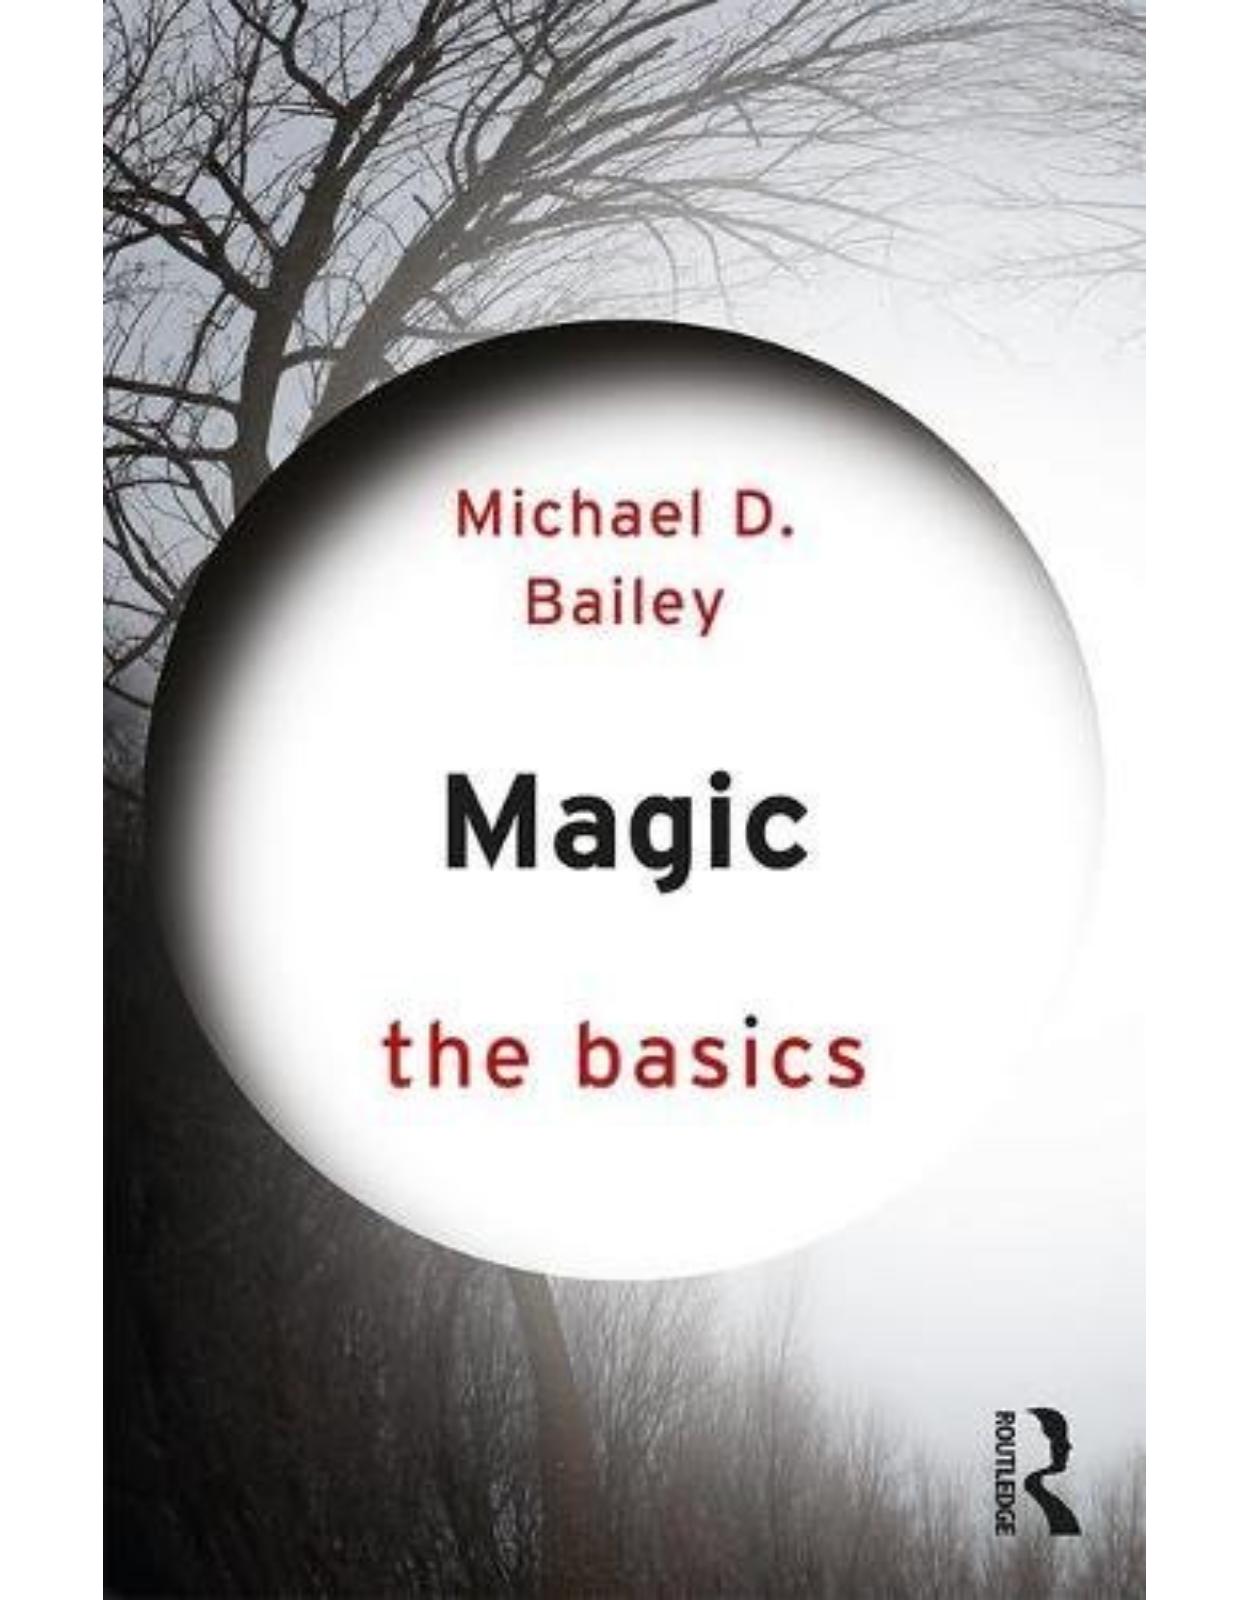 Magic: The Basics